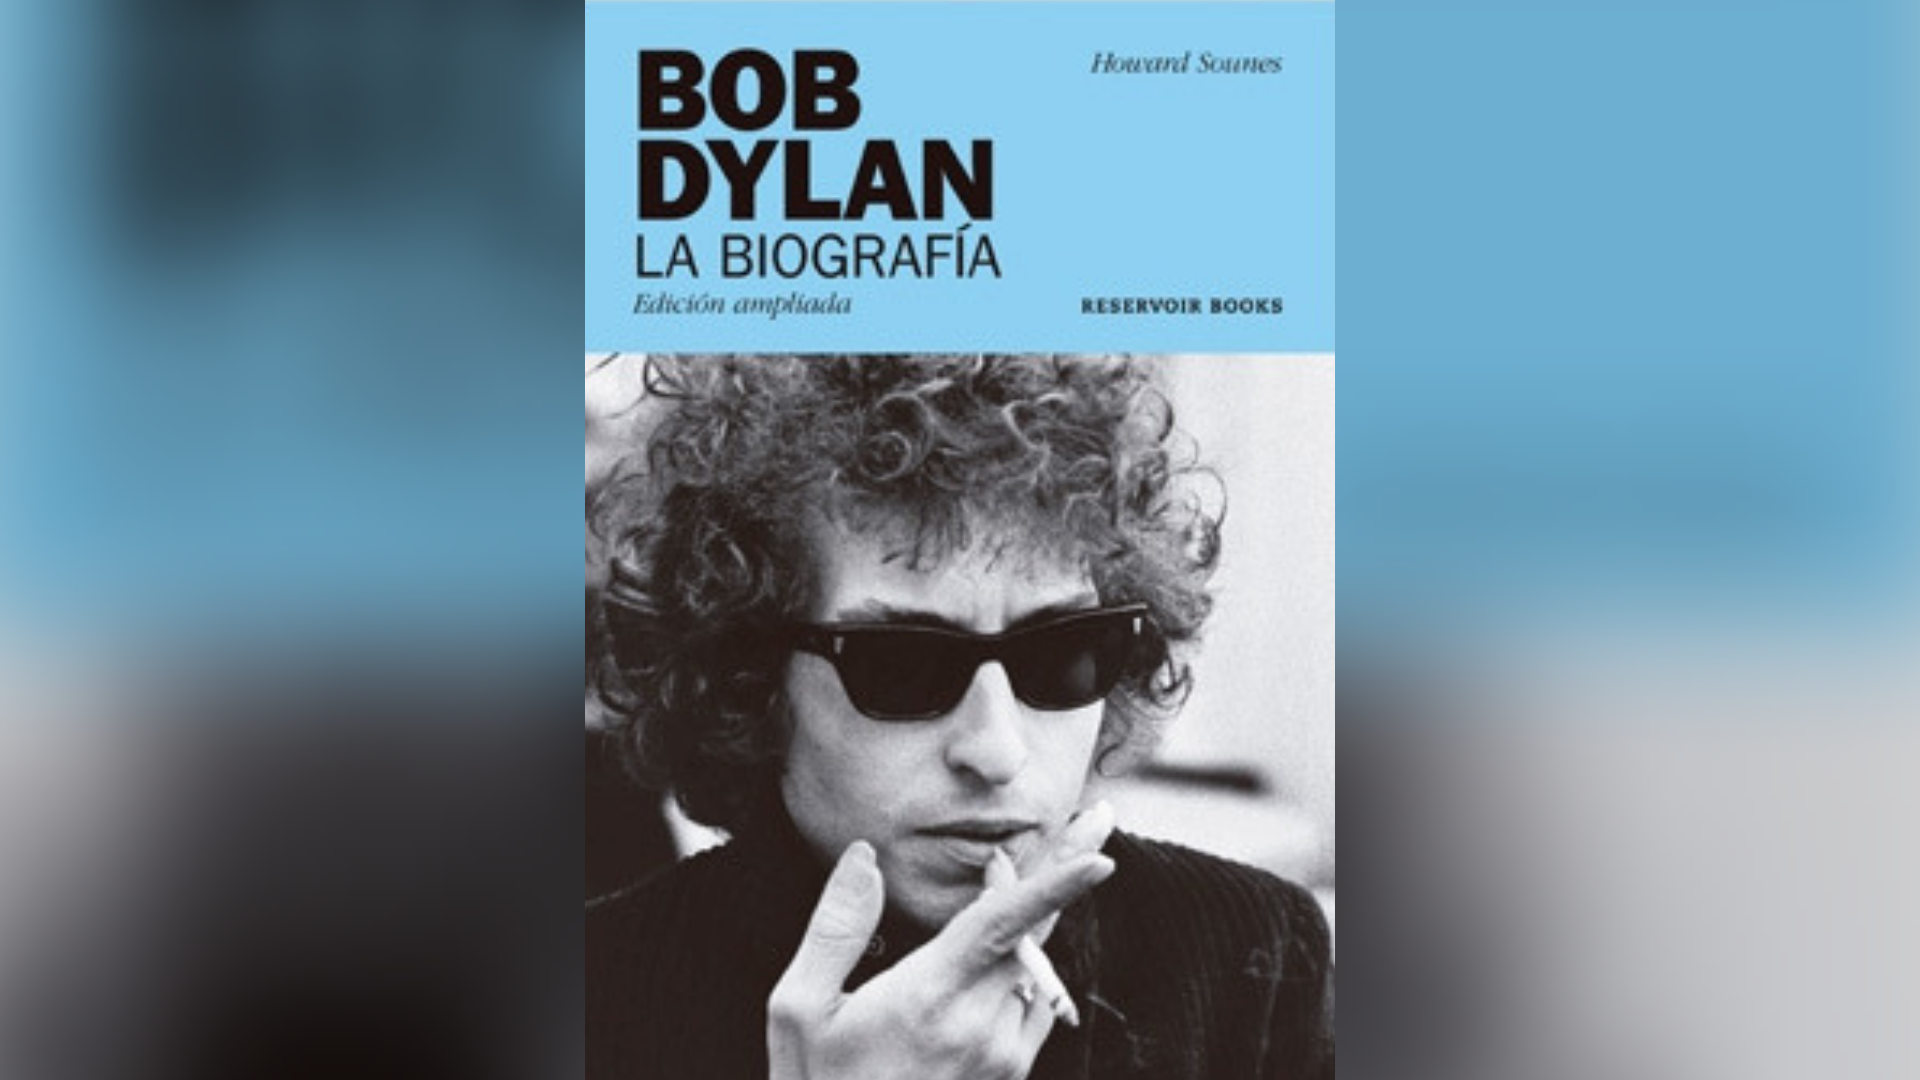 El libro de Howard Sounes, bestseller 2001 con la biografía Por la autopista: La vida de Bob Dylan.